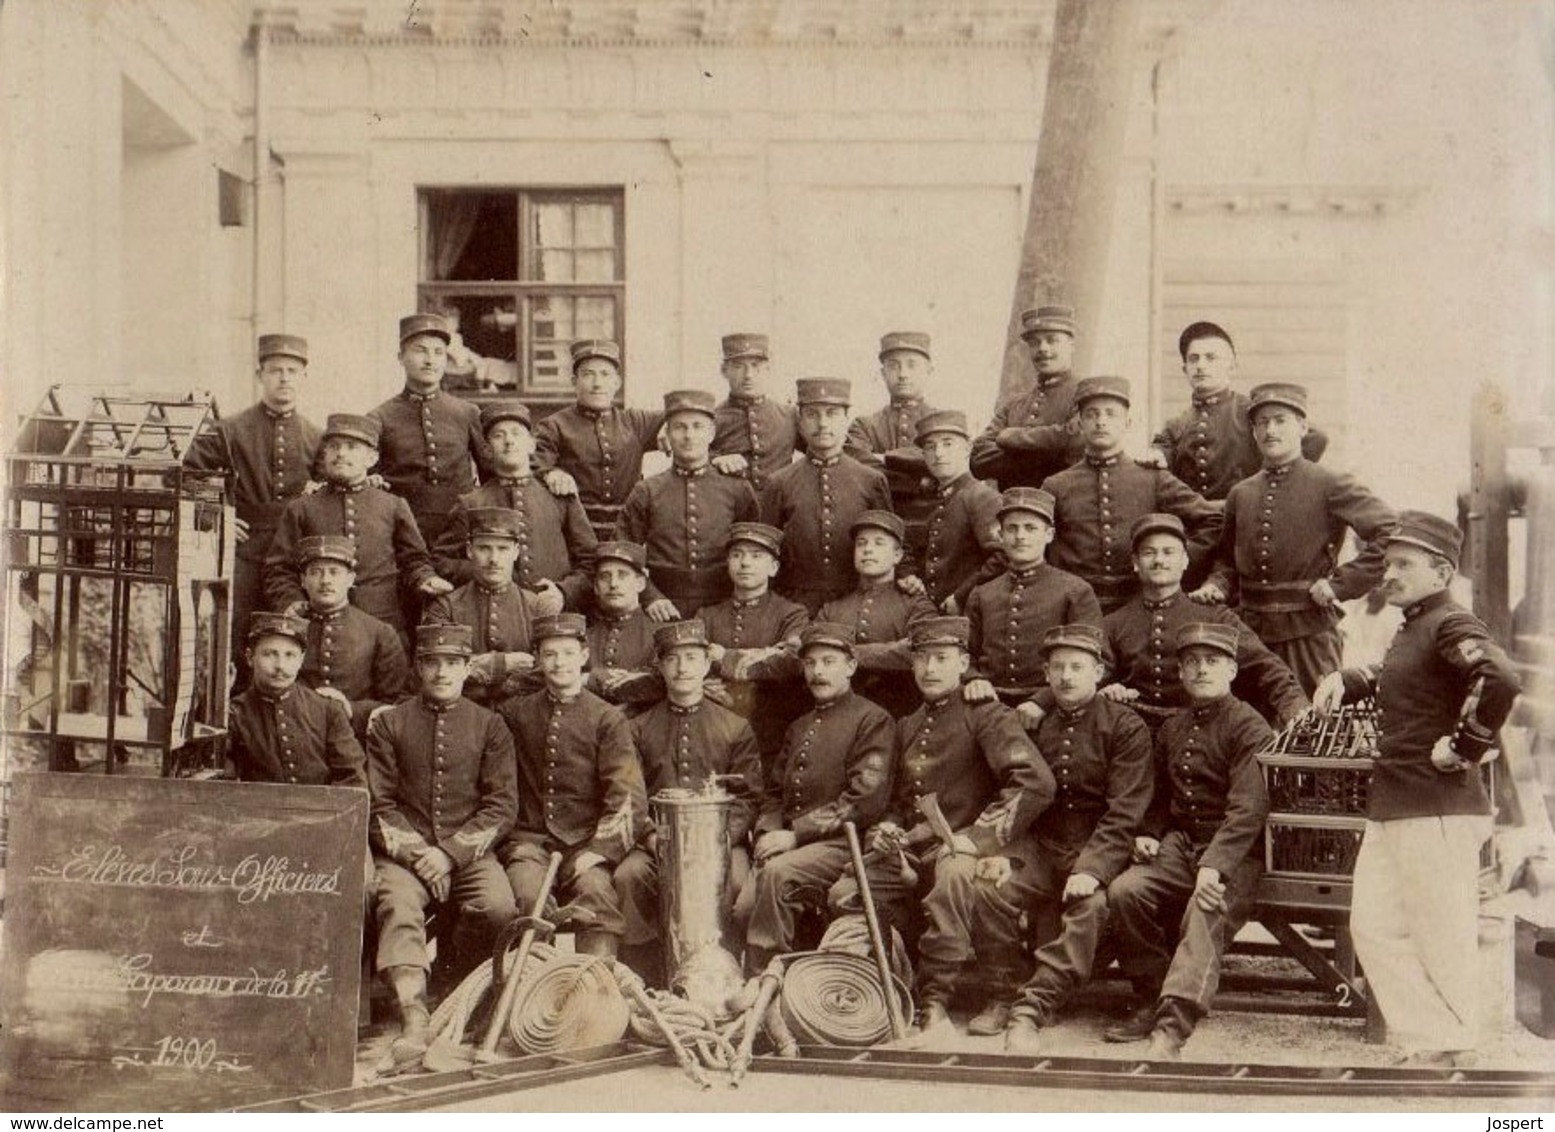 PRCP, , Les Sapeurs-Pompiers De Paris / Elèves Sous-officiers,  Brandweer, Photo Of Old Postcard, 2 Scans - Métiers